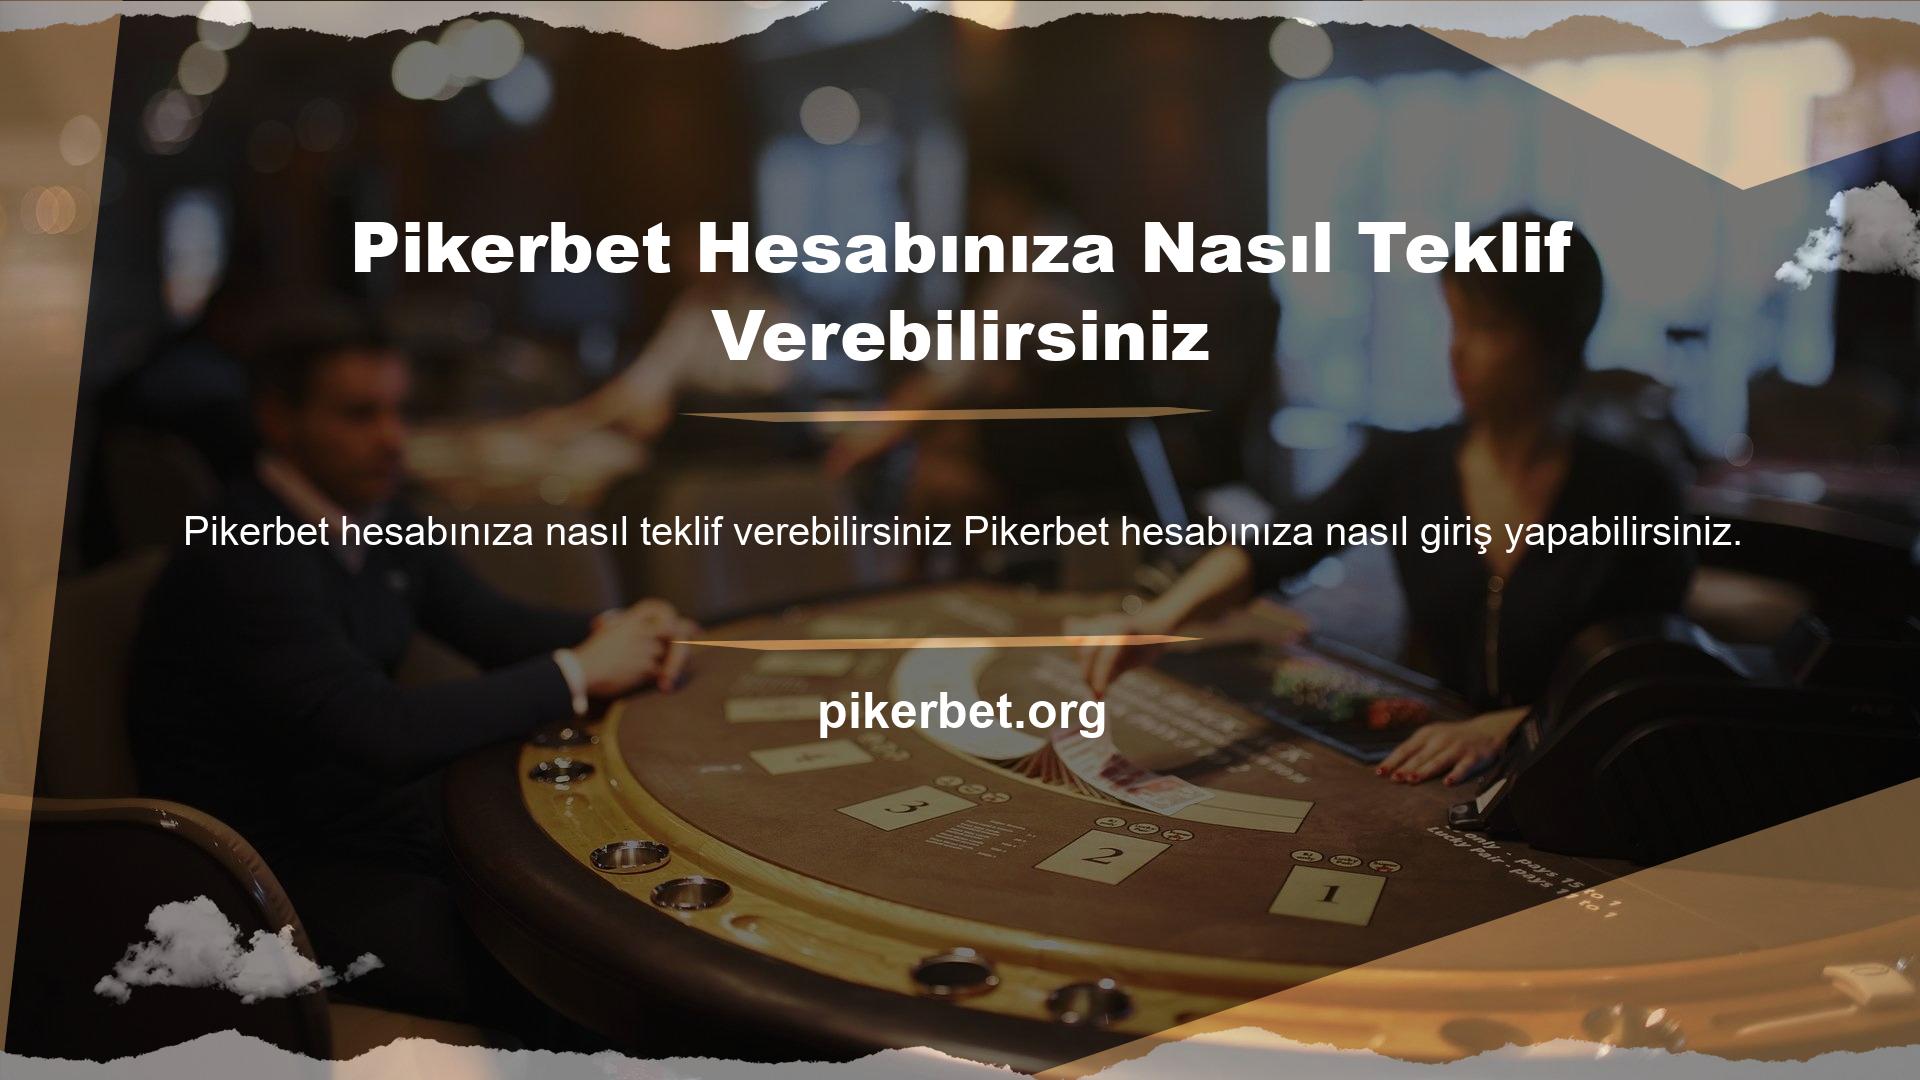 Oyun Nasıl Oynanır Pikerbet Hesabı Yeni Bahis Rehberi oynamak için güvenli bir çevrimiçi blackjack sitesinde hesap oluşturmak istiyorsunuz